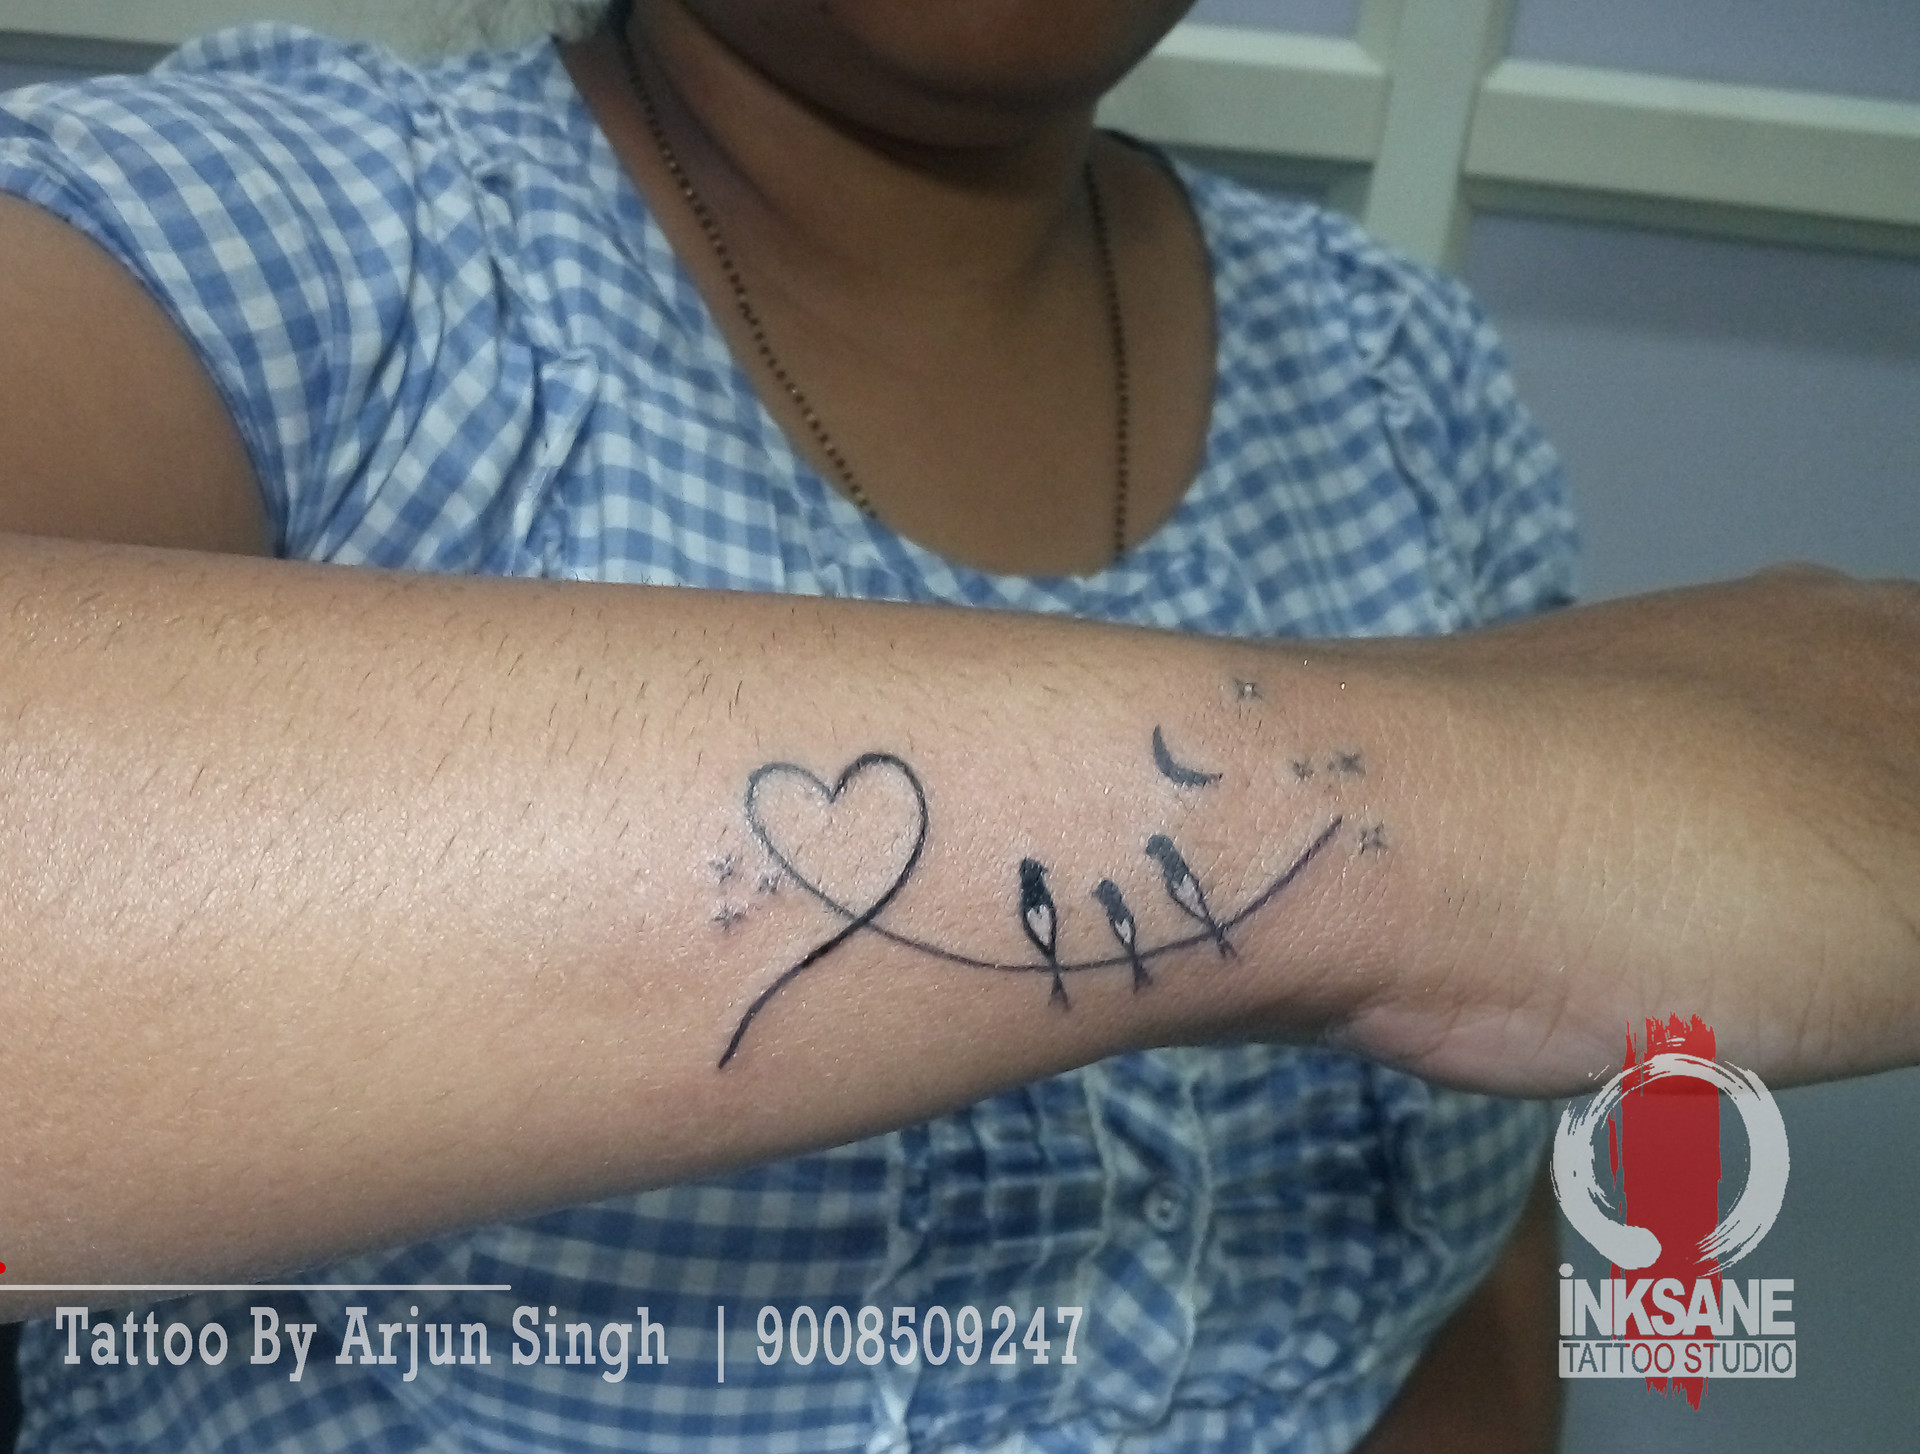 Arjun Singh - Tattoo